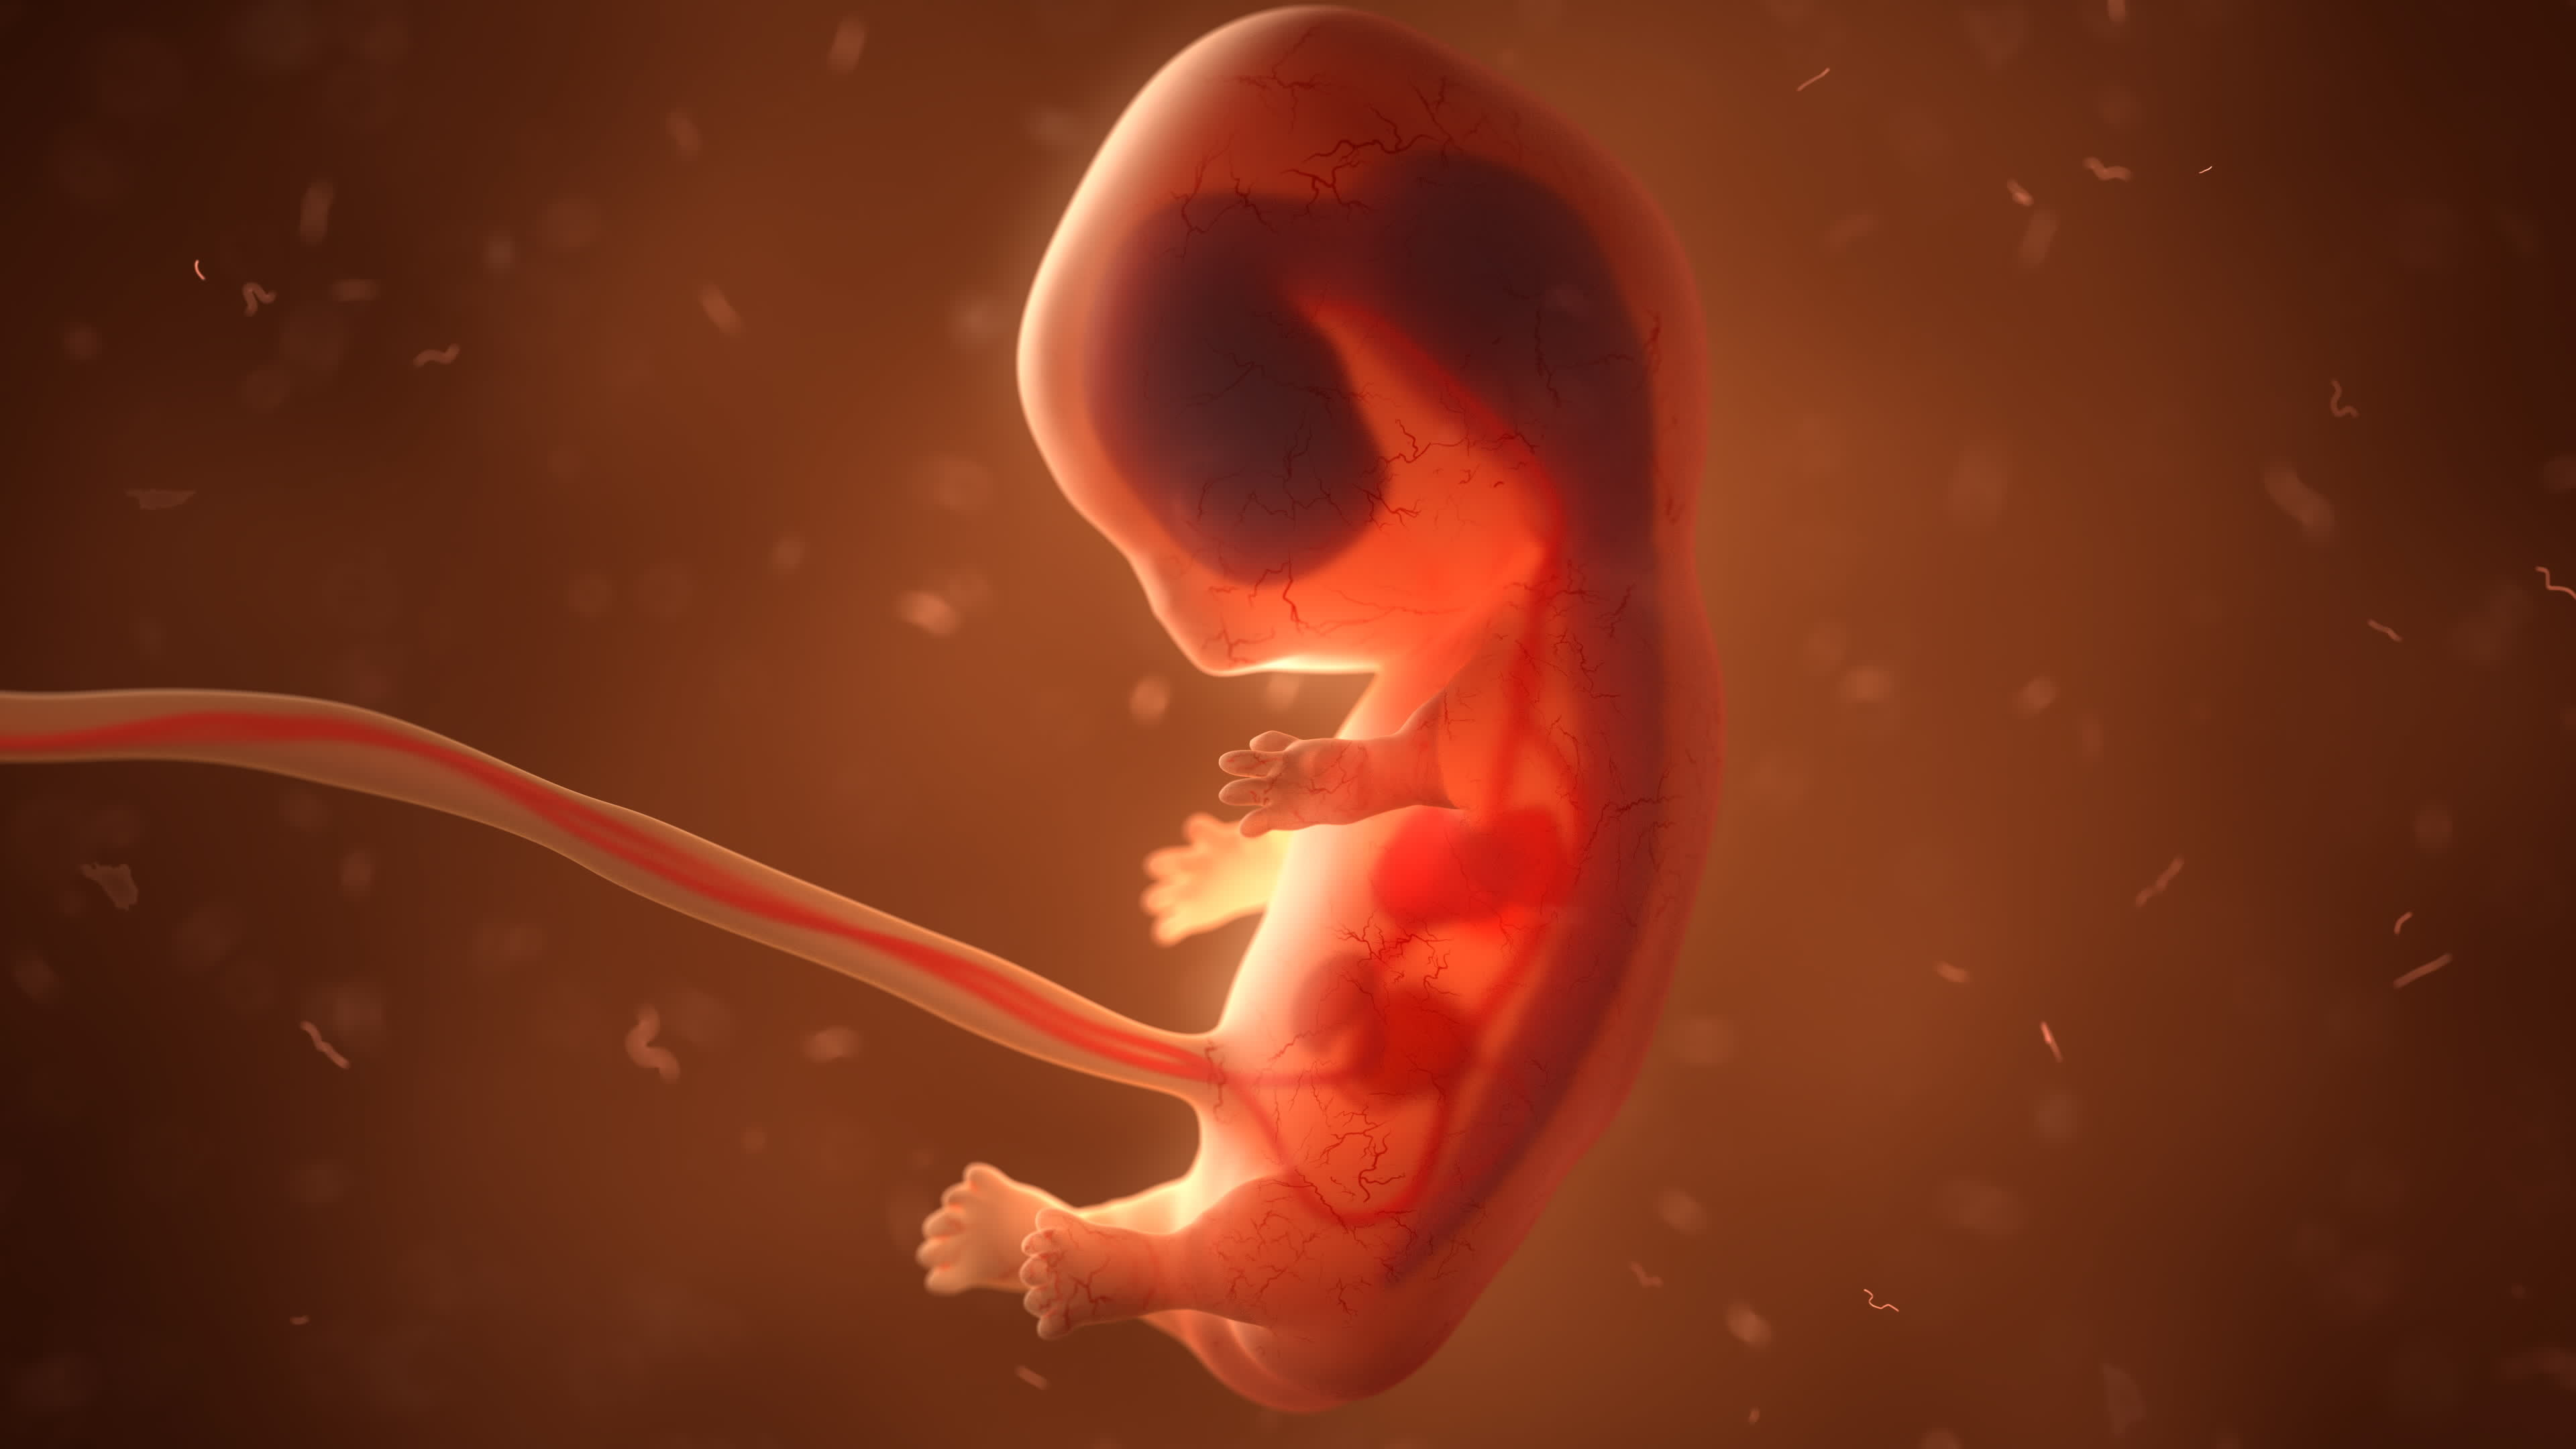 Une équipe de scientifiques a produit des modèles d'embryon imitant le 14e jour de développement de l'embryon humain. © unlimit3d, Adobe Stock